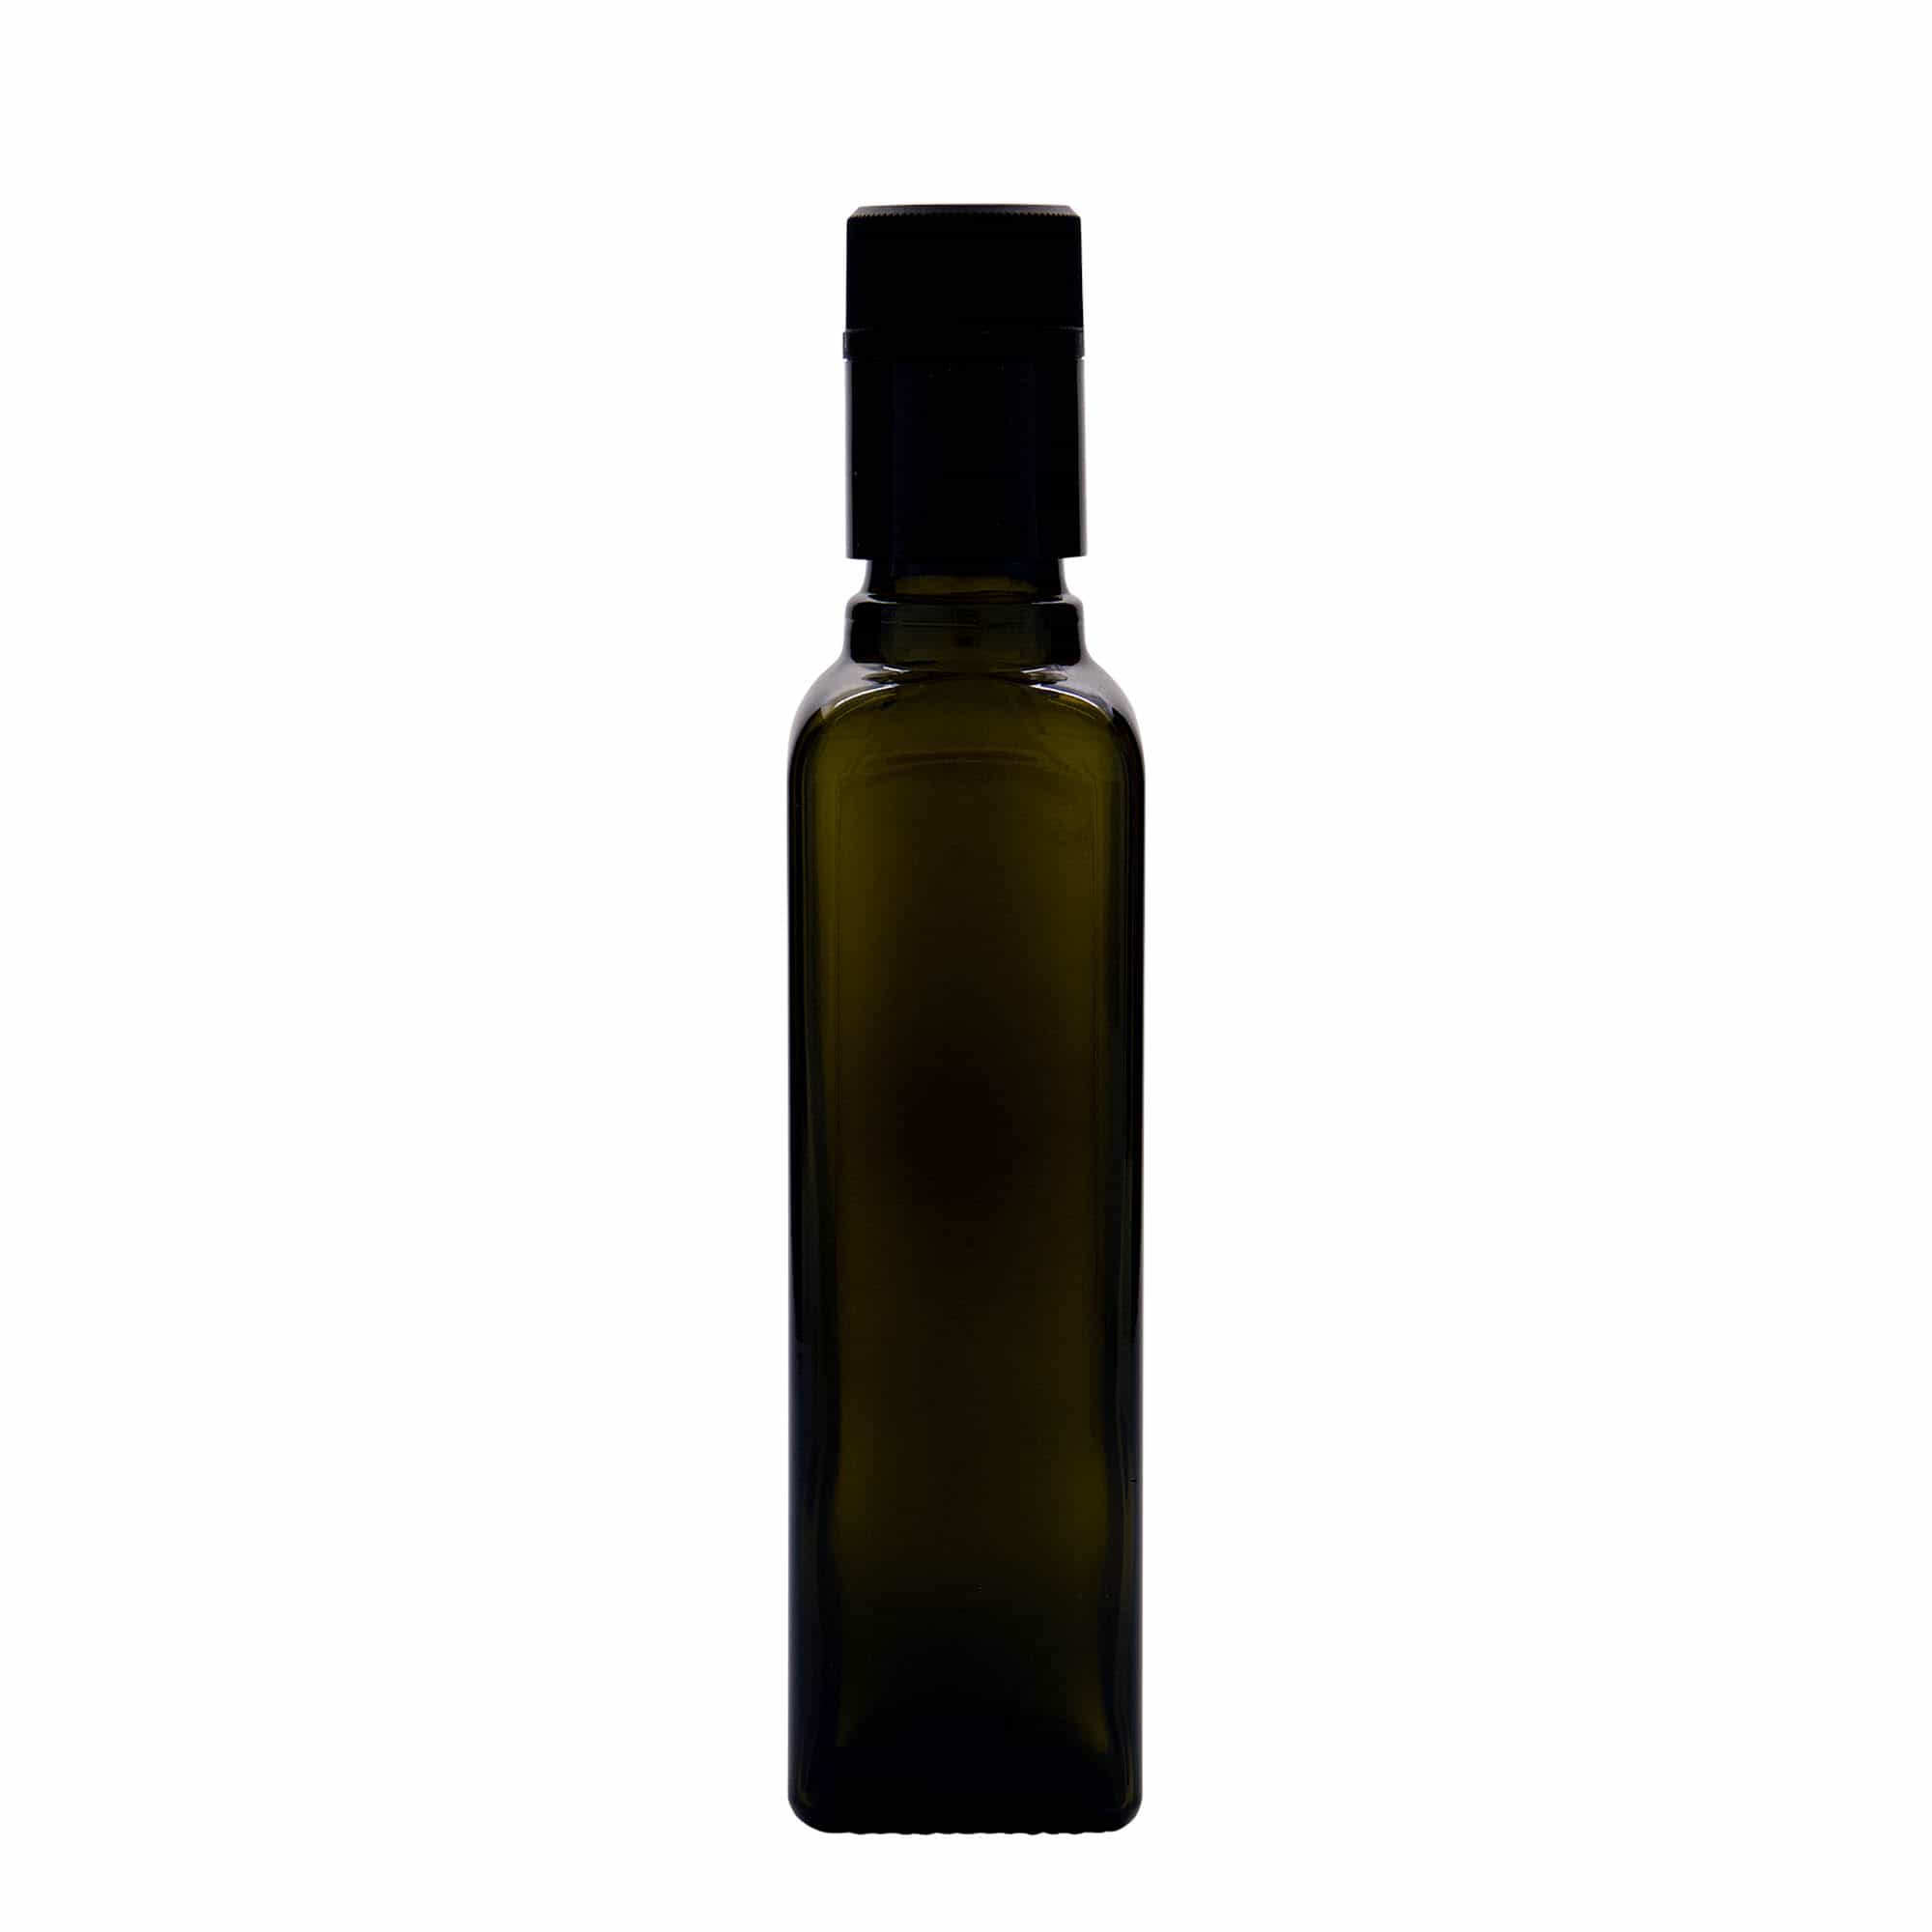 Azijn-/oliefles 'Quadra', 250 ml, glas, vierkant, antiekgroen, monding: DOP